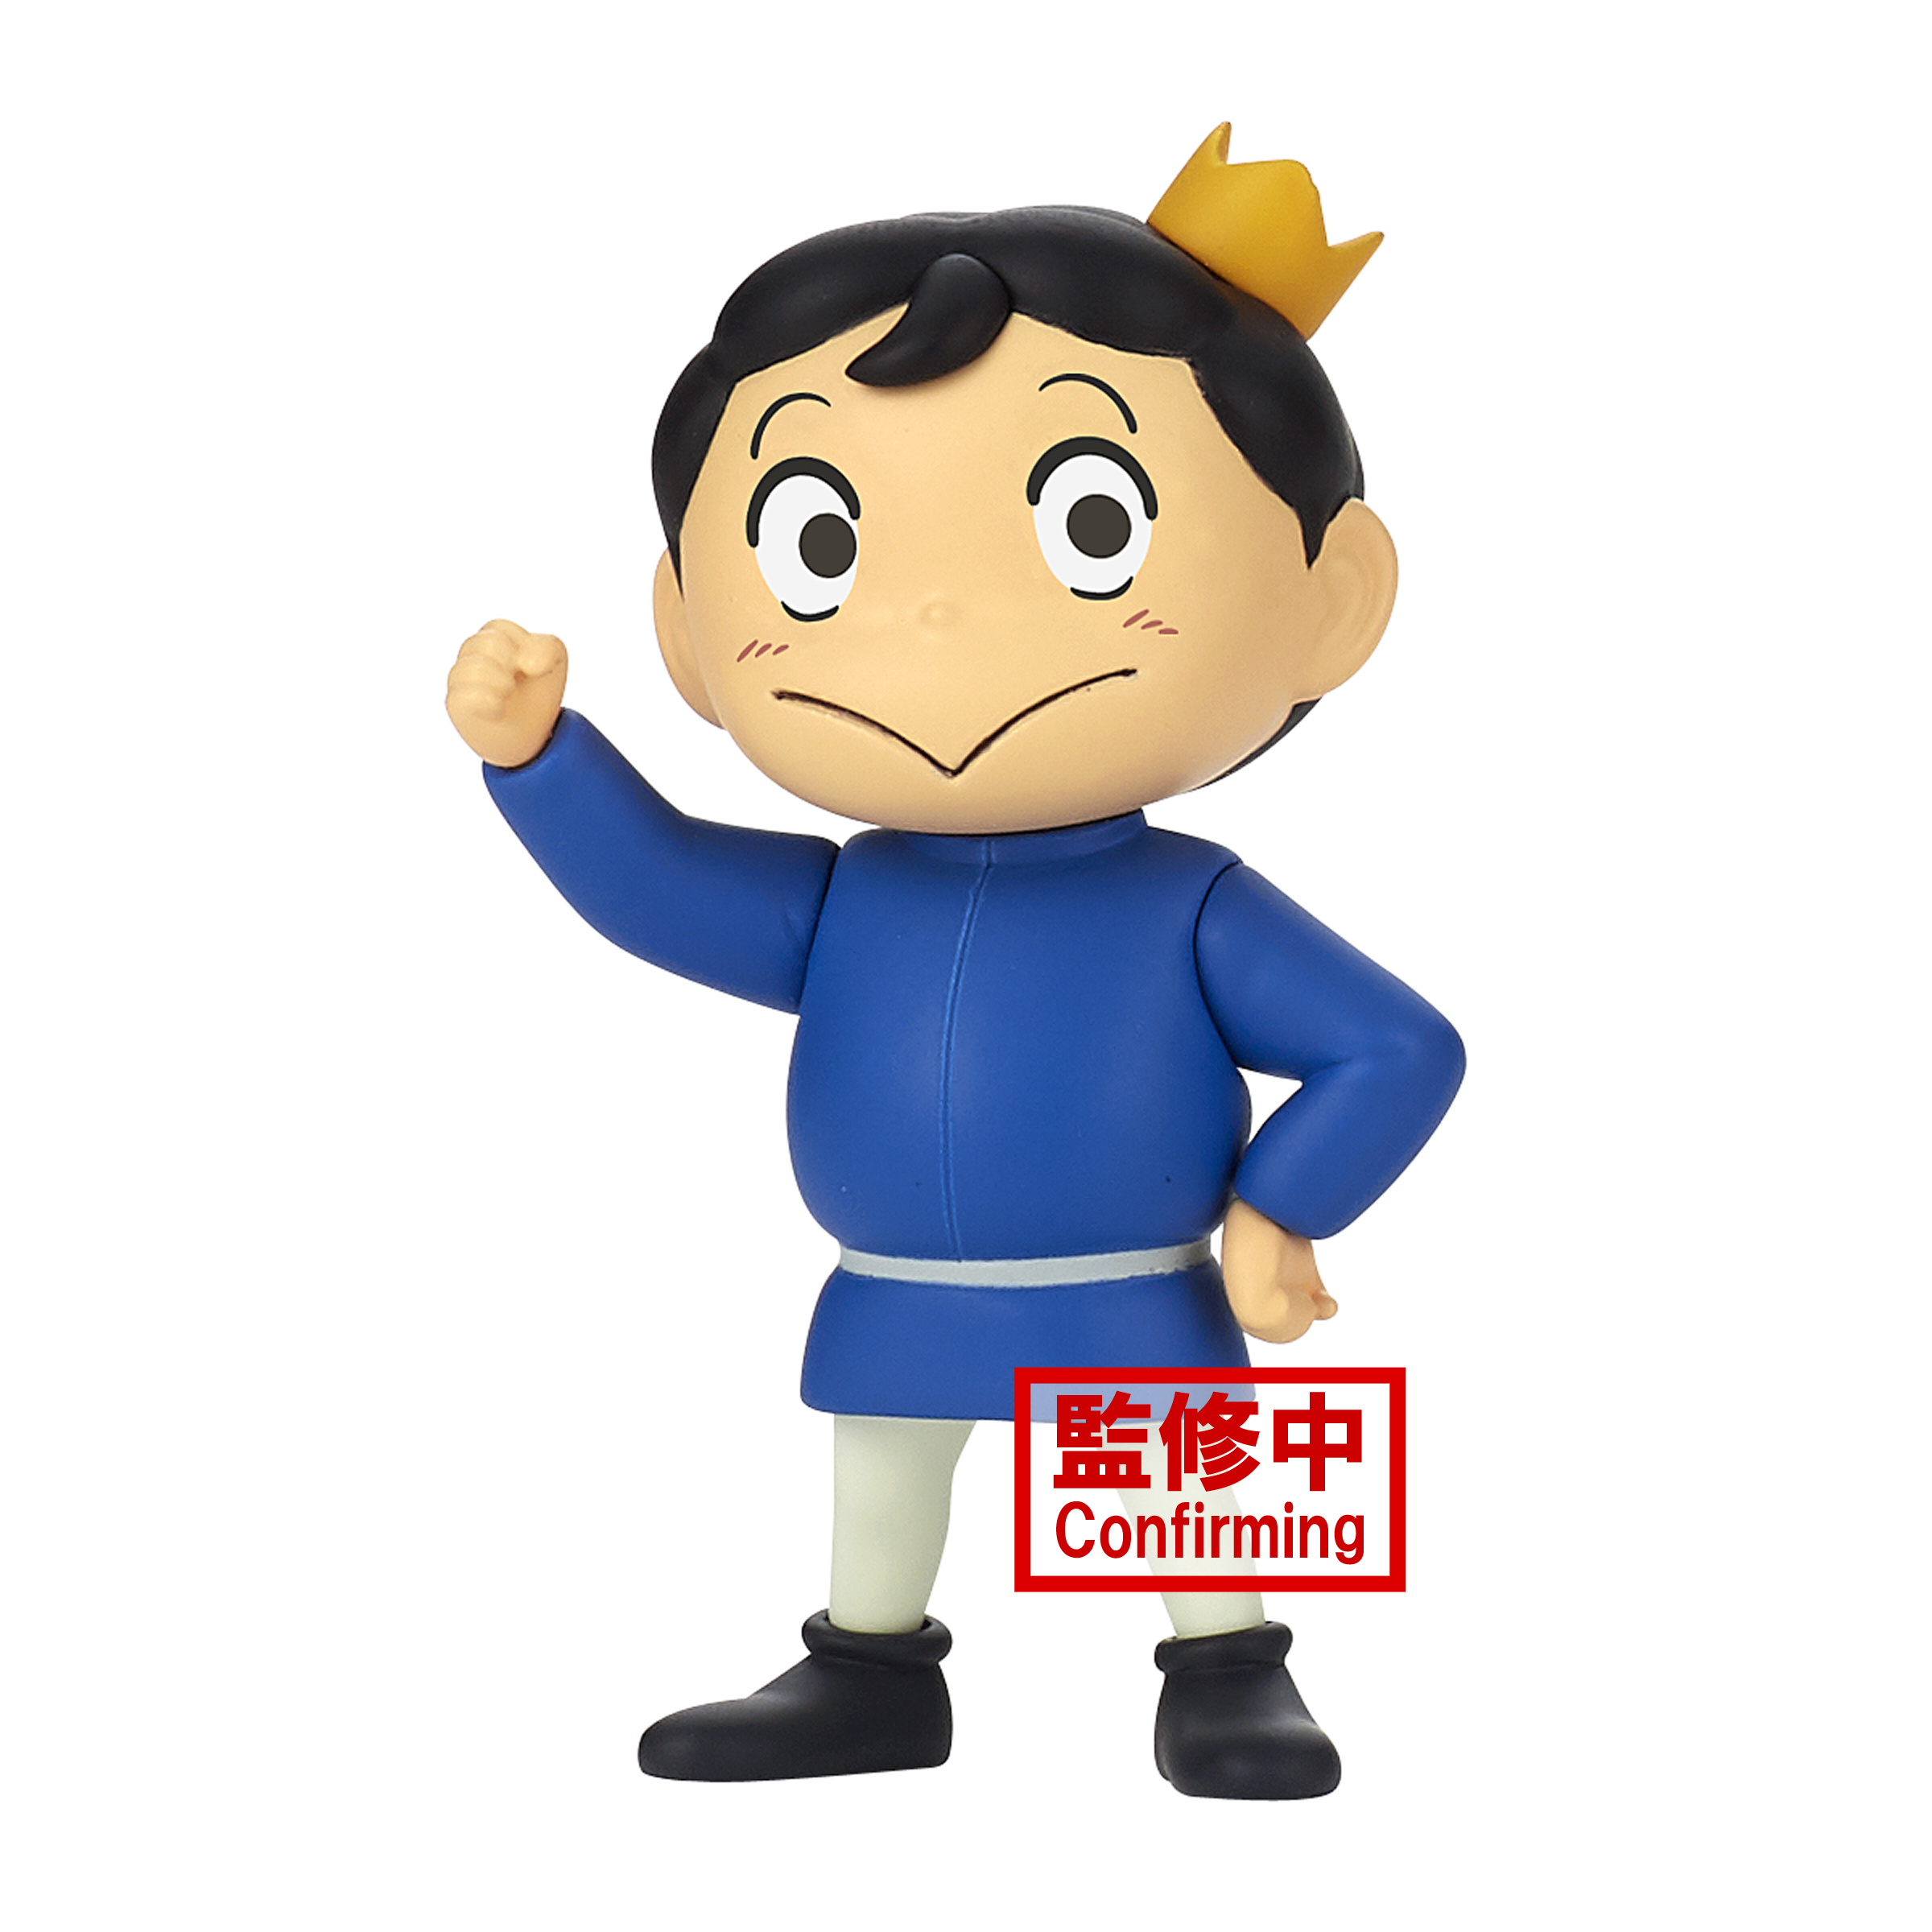 Anime ranking of kings hd miranjo bojji daida Playmat Gaming Mat | eBay-demhanvico.com.vn